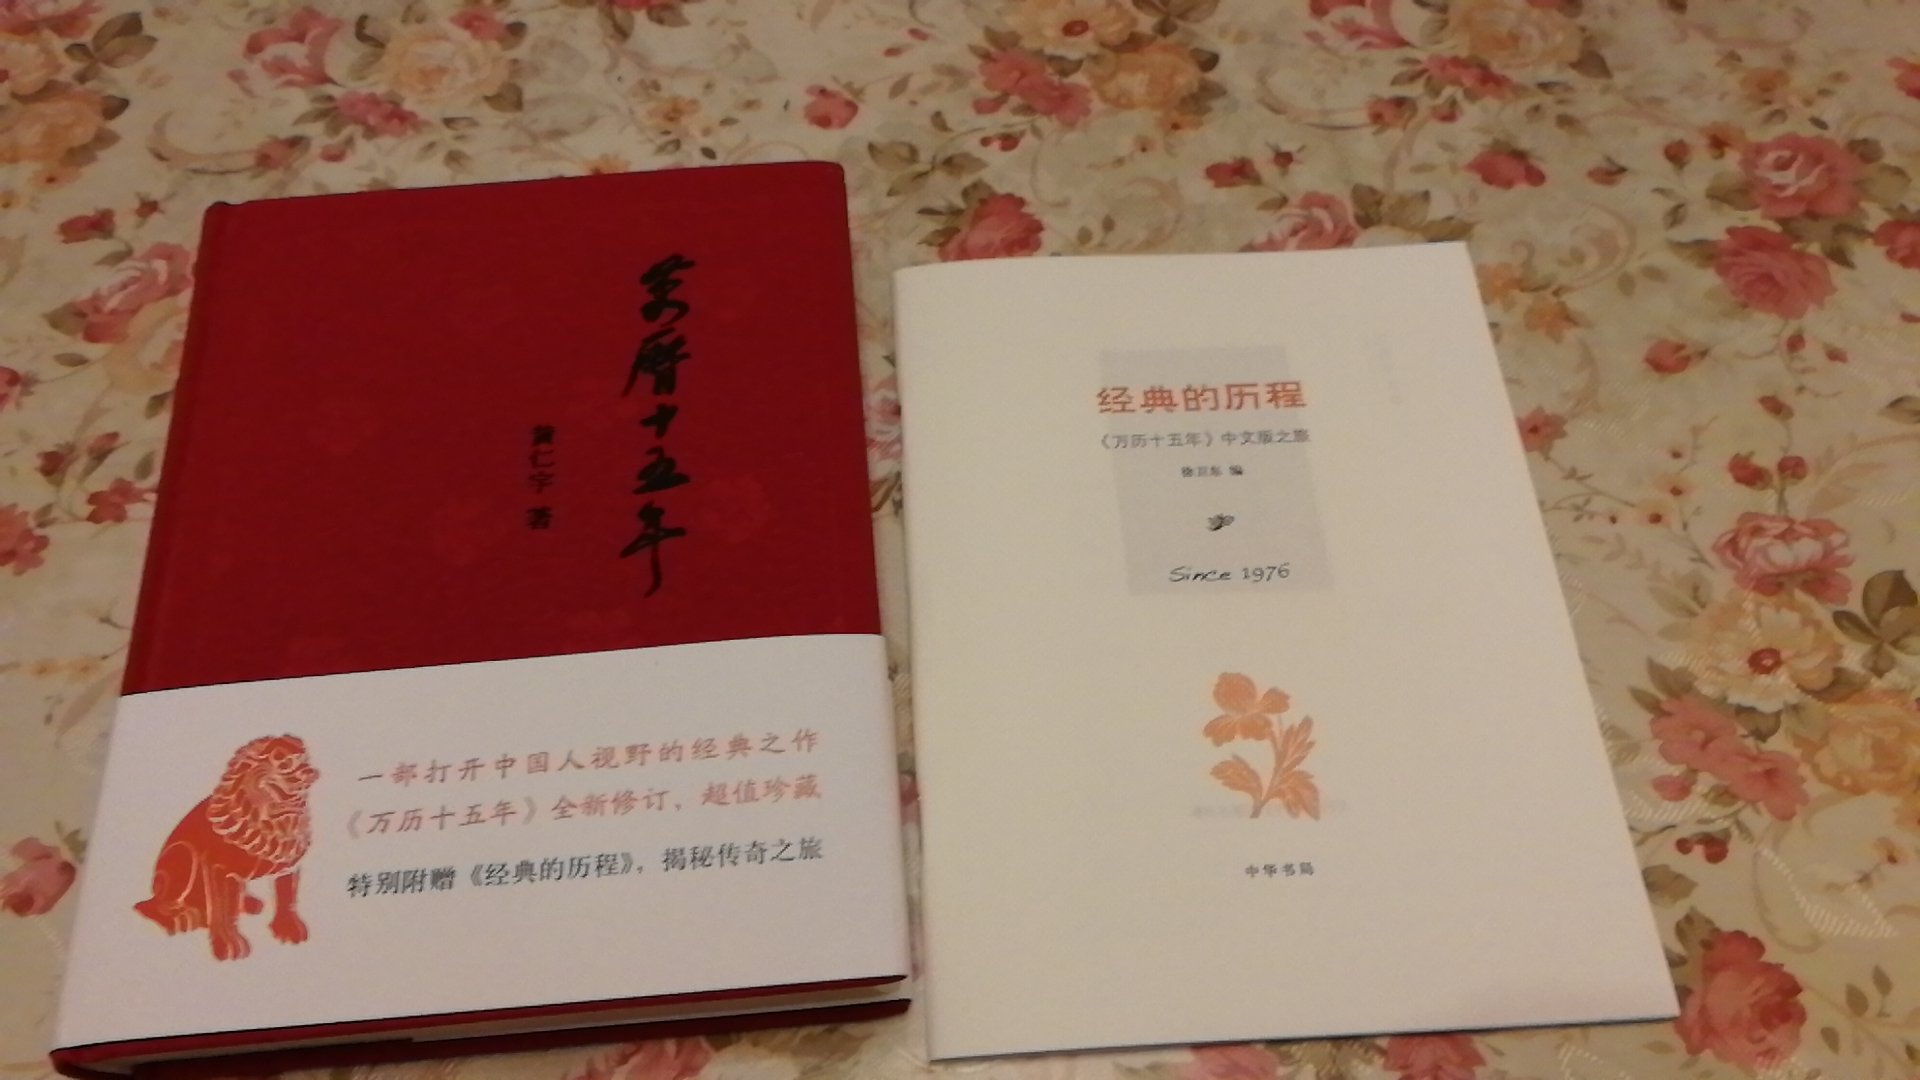 中华书局的书，封面精致，书纸张非常好，印刷清晰，工整，插图精美。